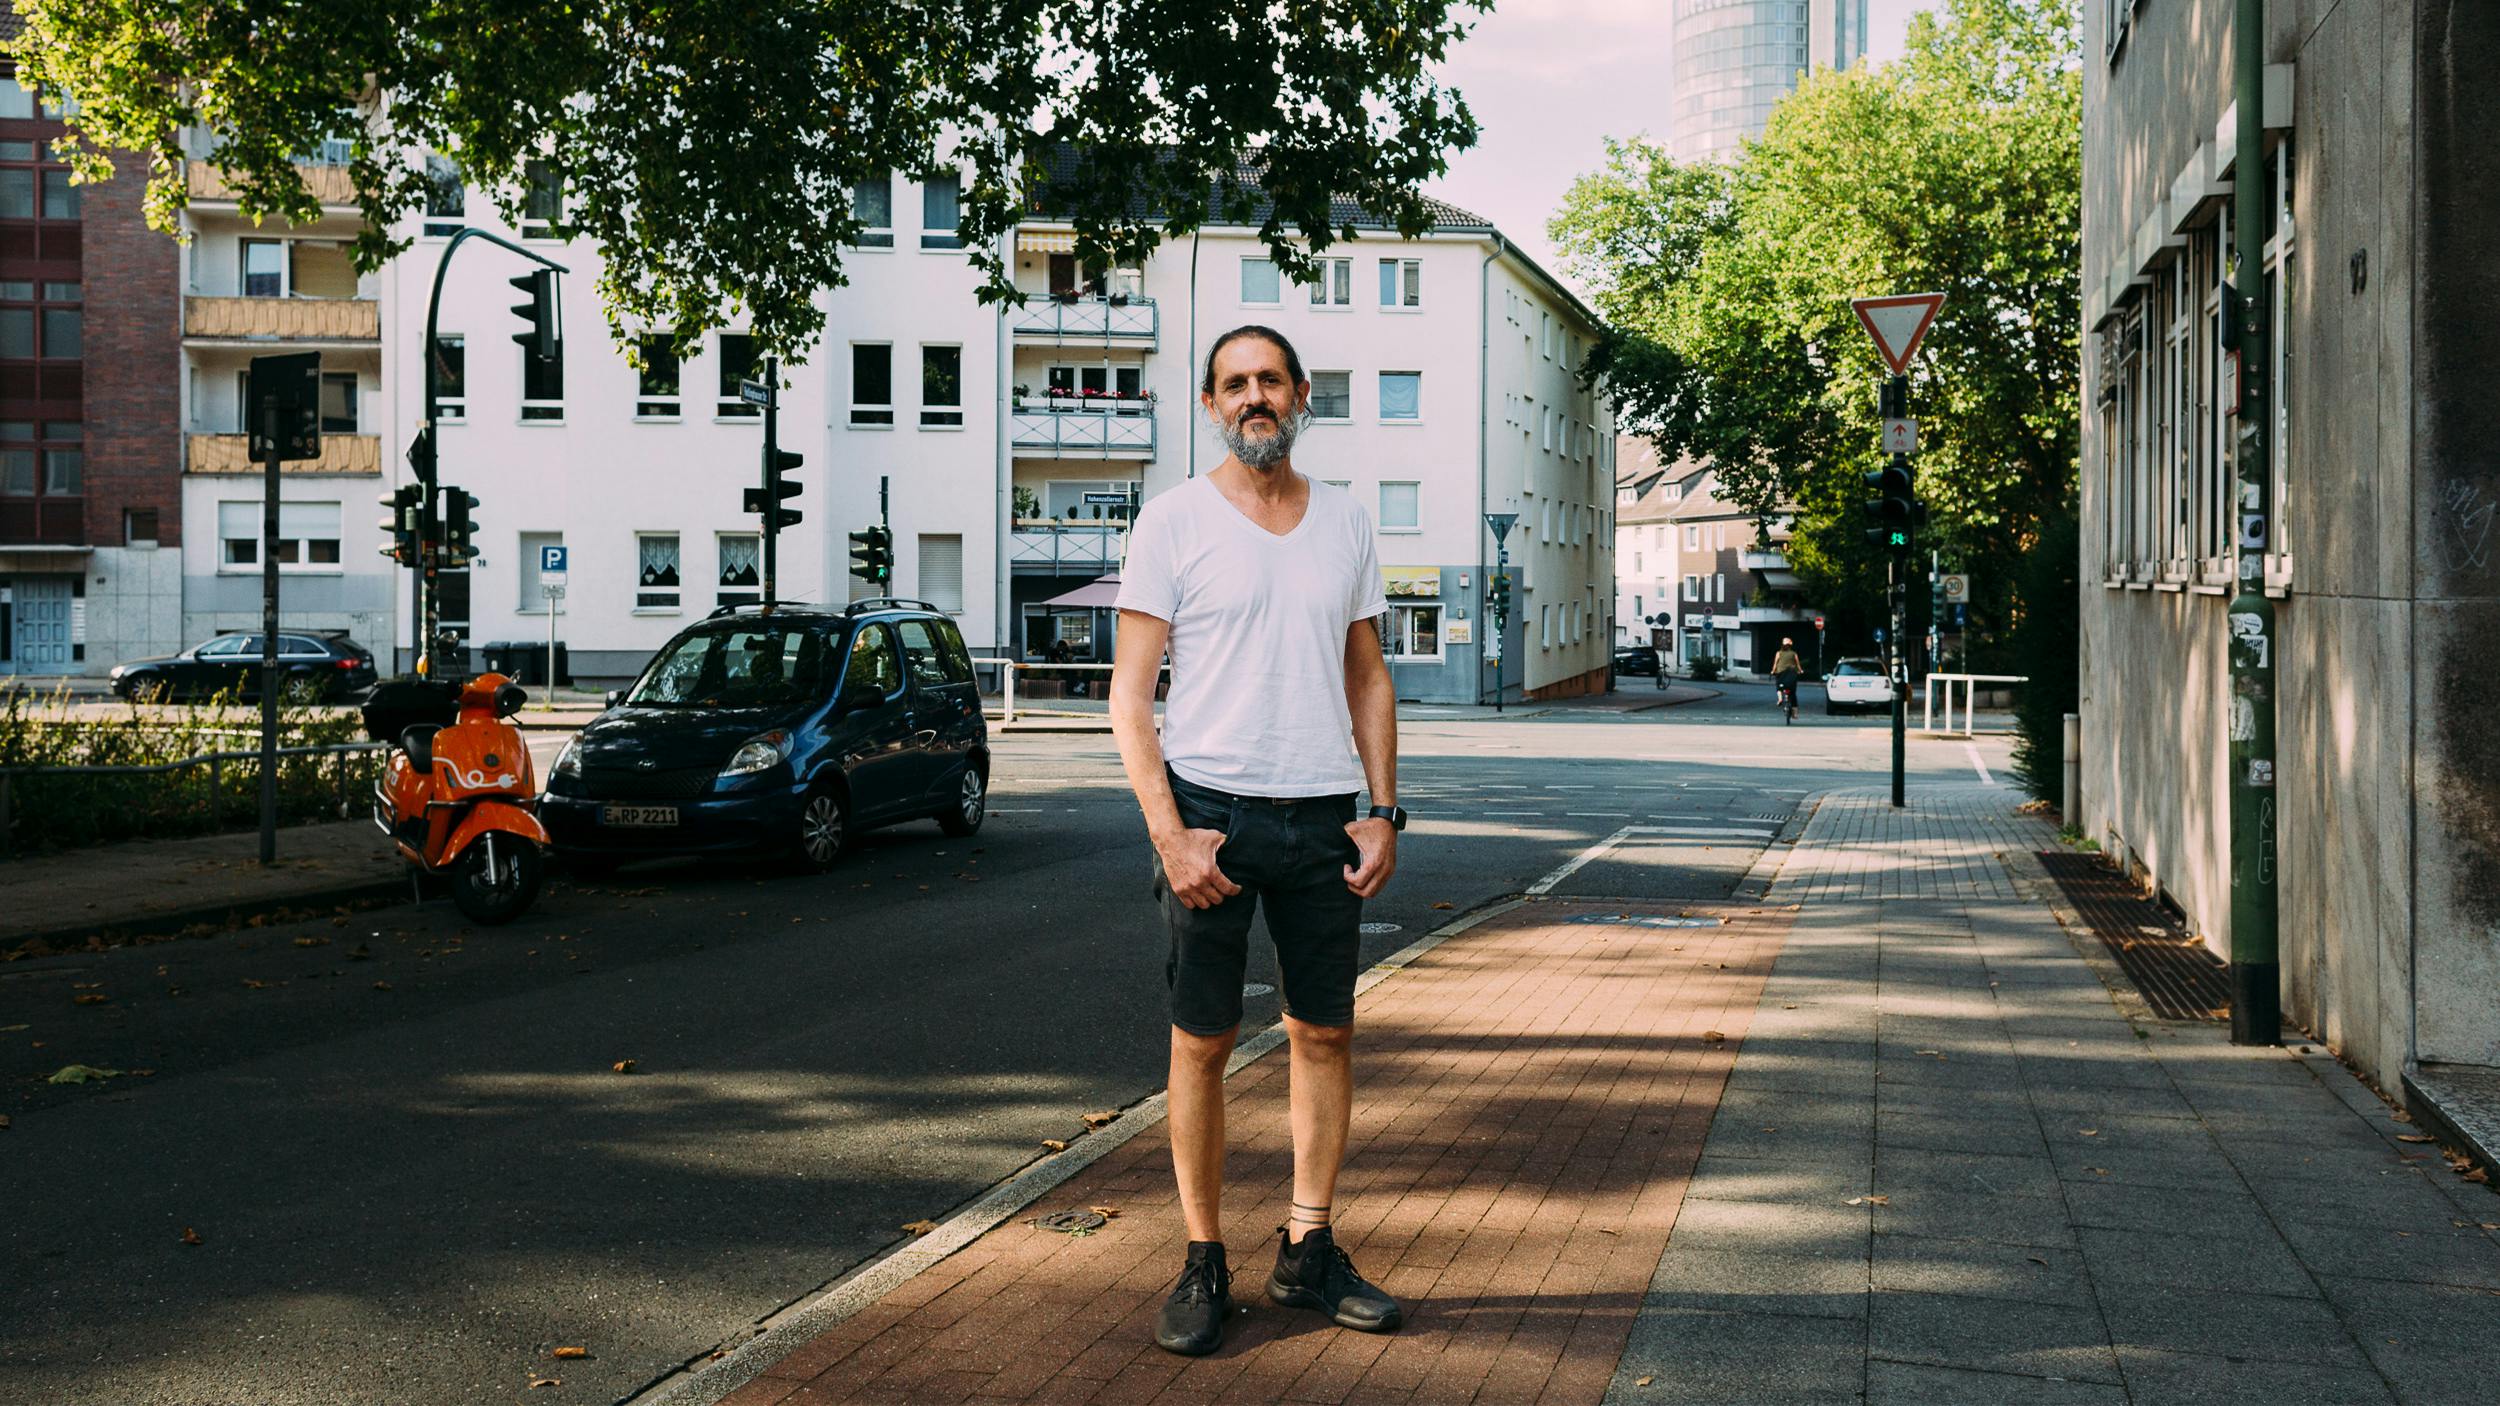 Saad steht auf einem Bürgersteig in der Essener Innenstadt. Er trägt ein weißes T-Shirt, eine kurze schwarze Jeanshose und lächelt in die Kamera. Im Hintergrund sind Wohnhäuser und ein Hochhaus zu erkennen.